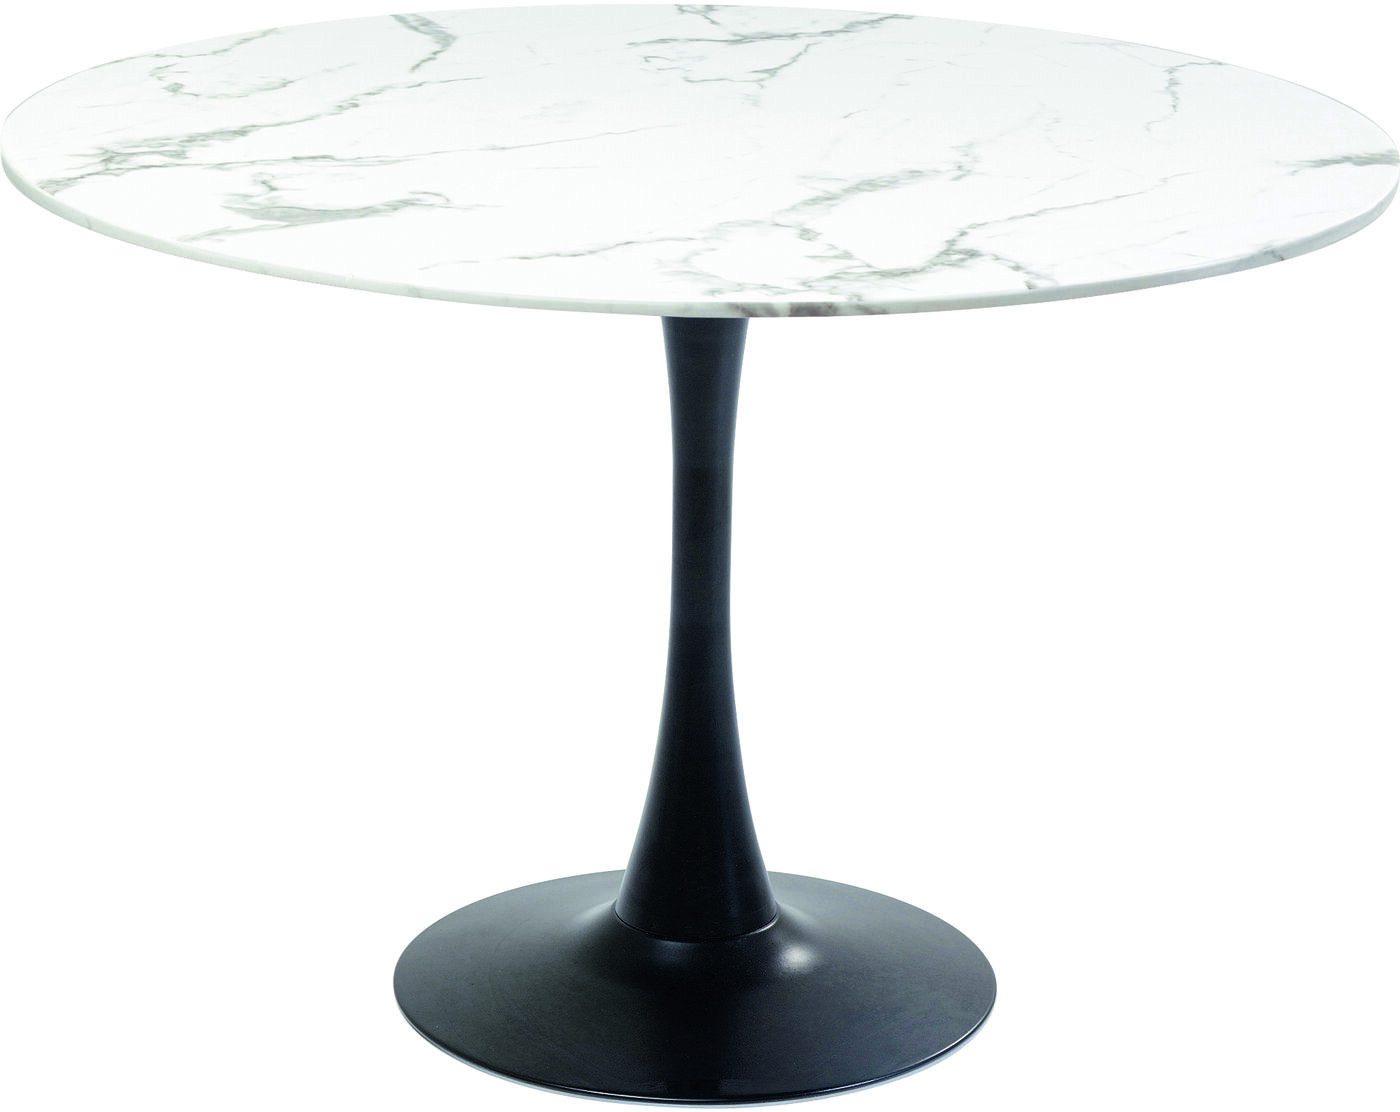 Tafel Schickeria Marble White Black Ø110cm Kare Design Eettafel 86963